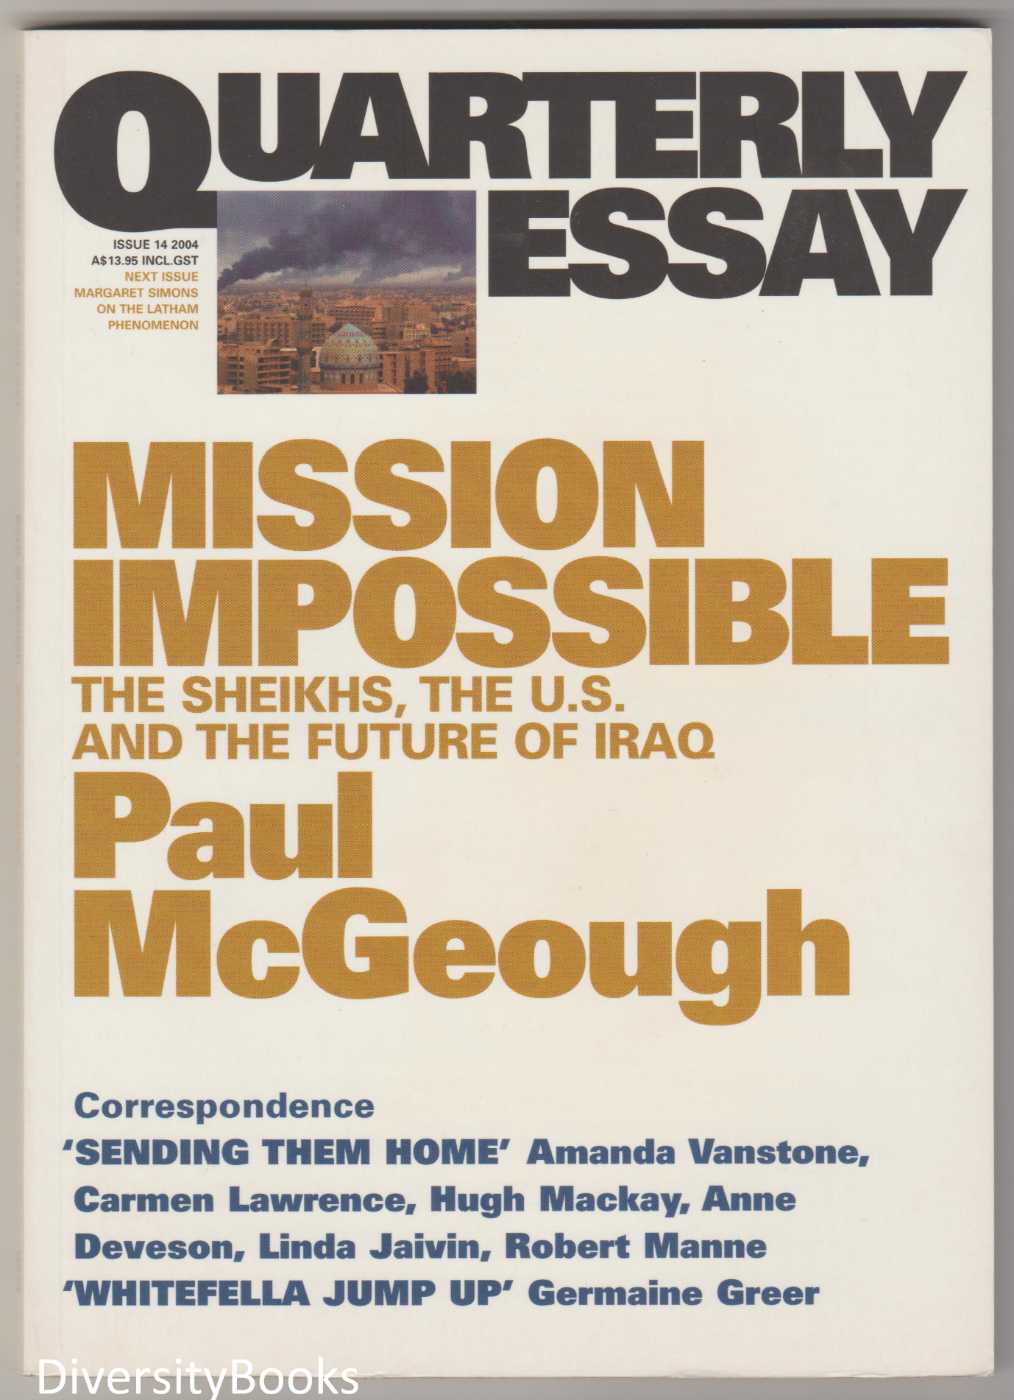 Iraq war essay